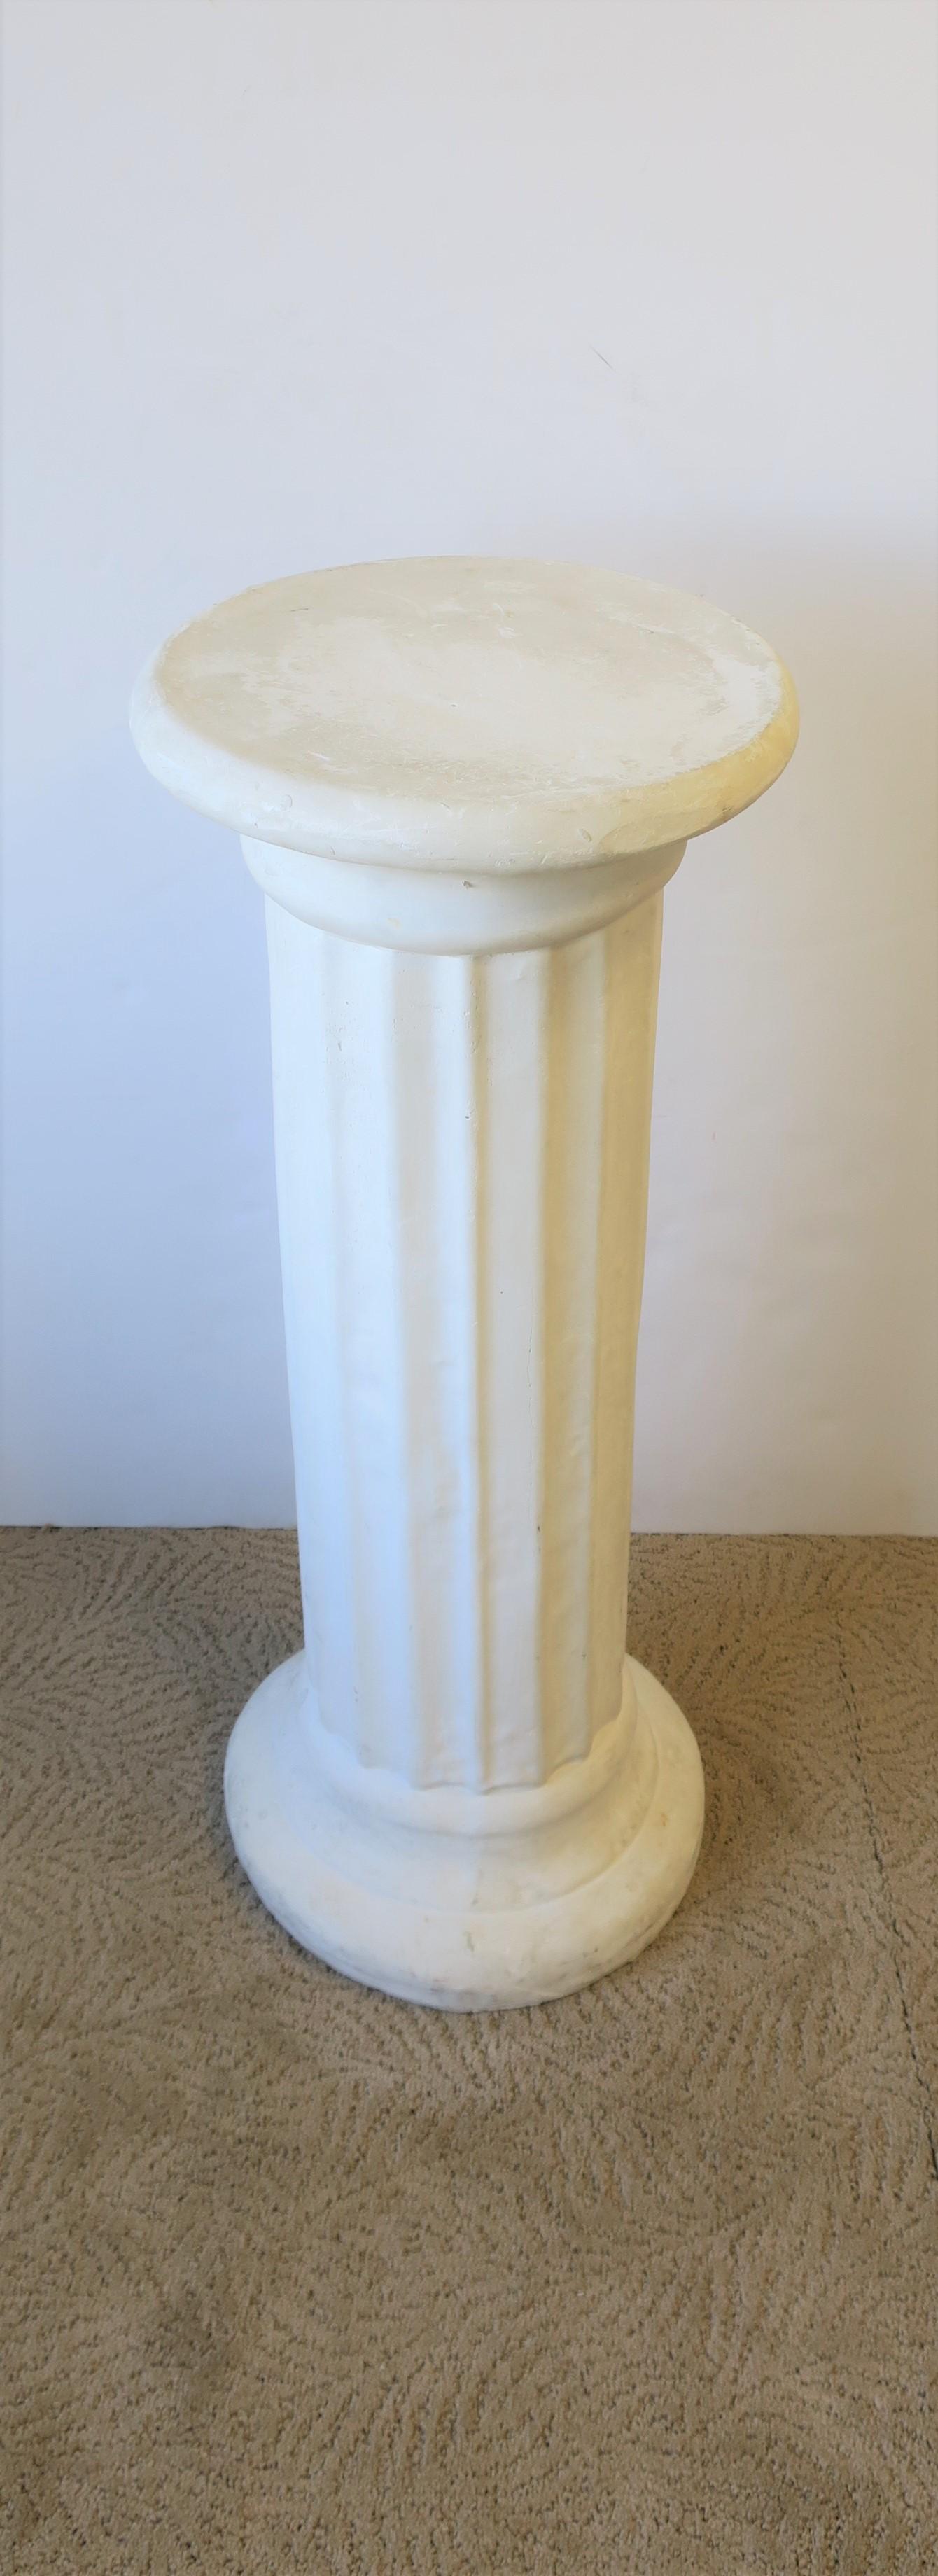 white corinthian column pedestal